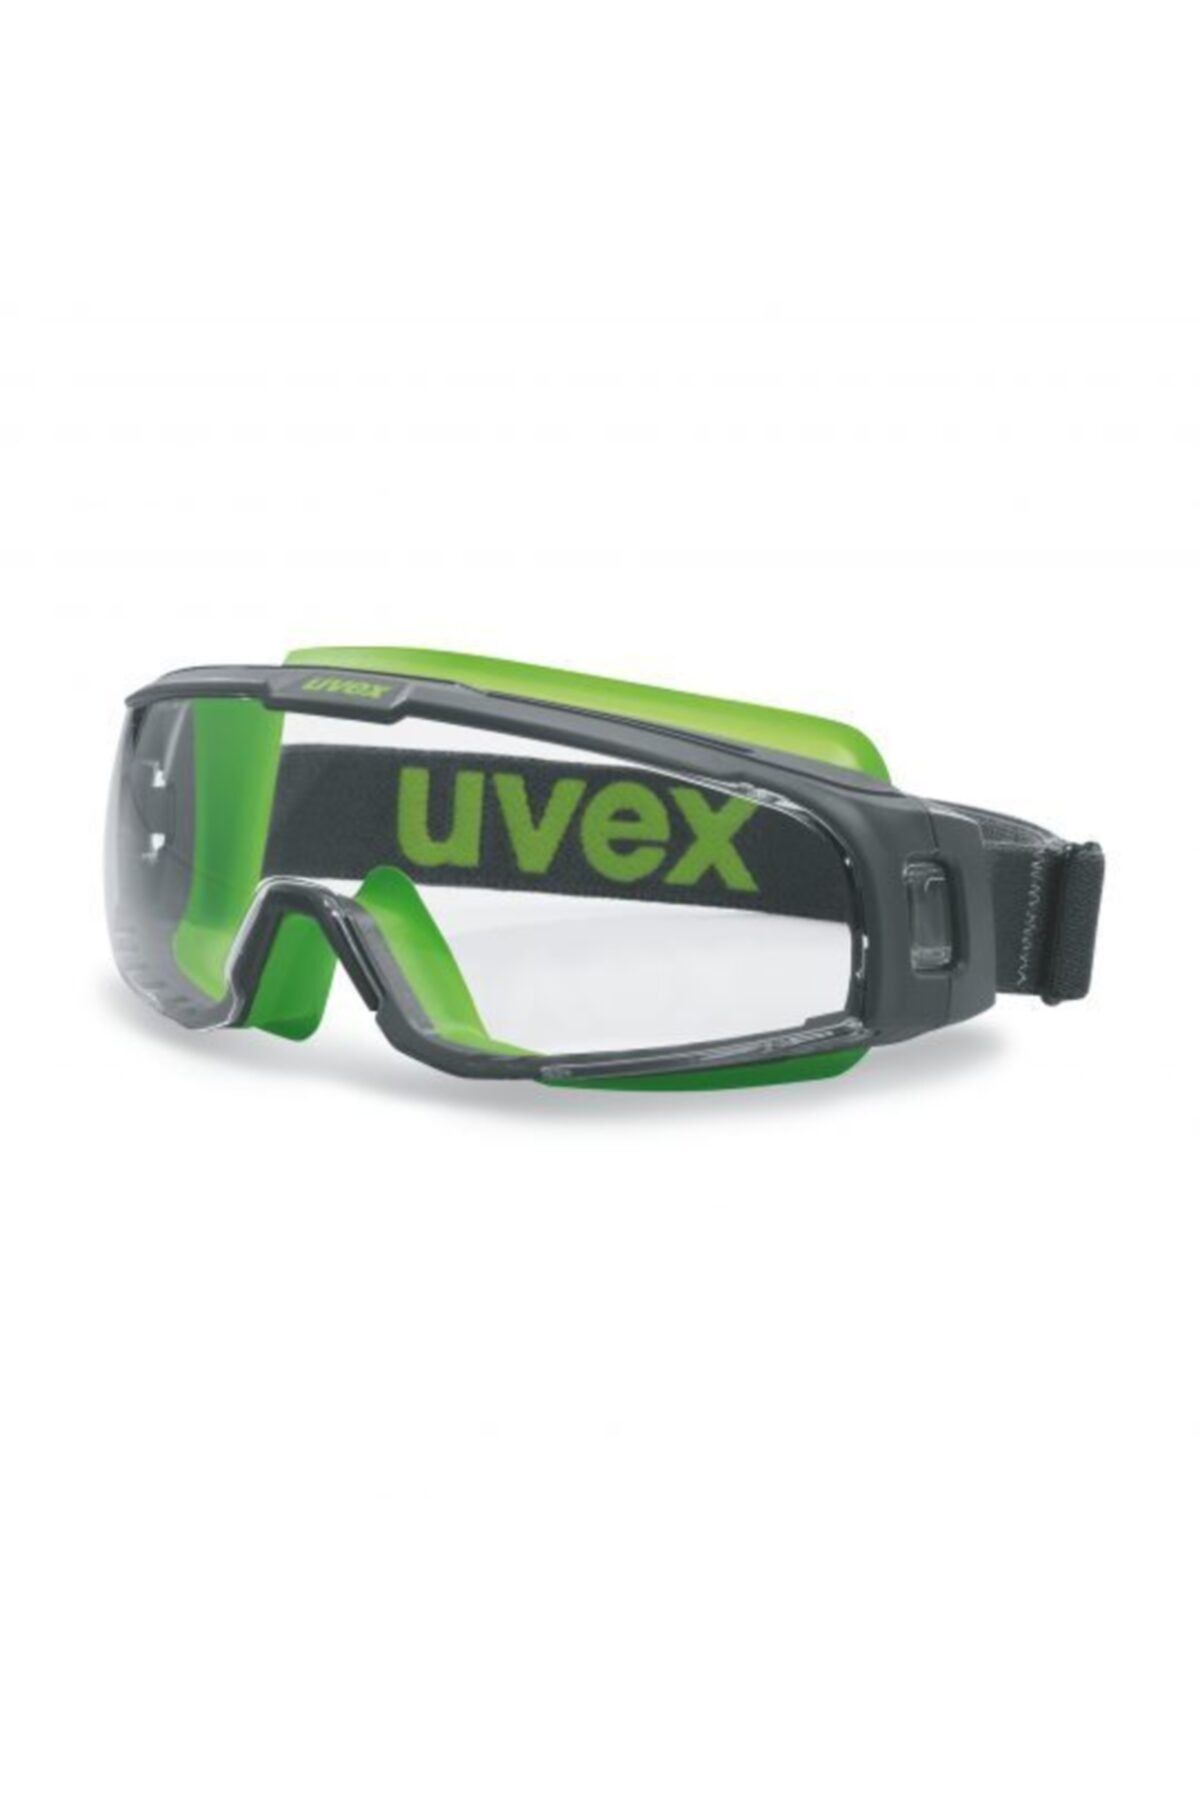 Uvex İş Güvenliği Gözlük